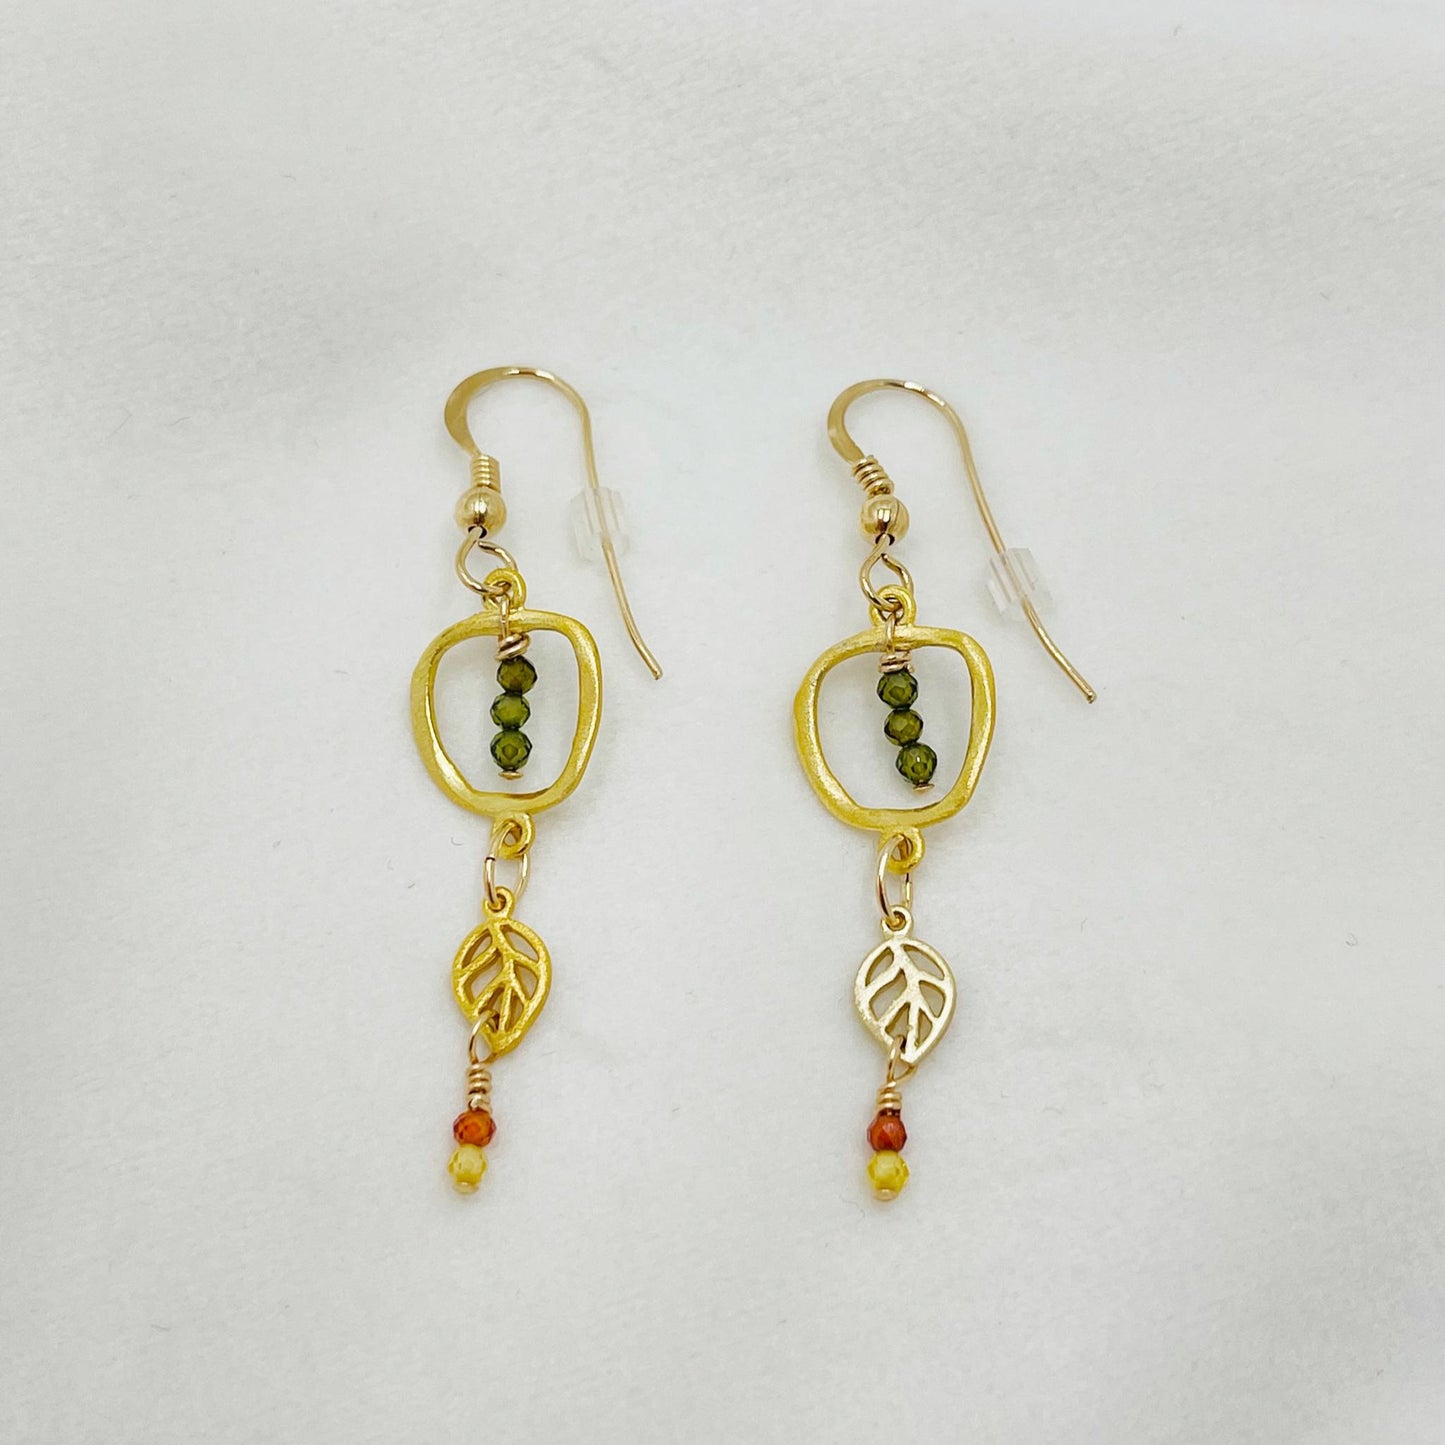 Zircon Gemstone Earrings -14 karat Gold Earrings-Carabella By Cheryl